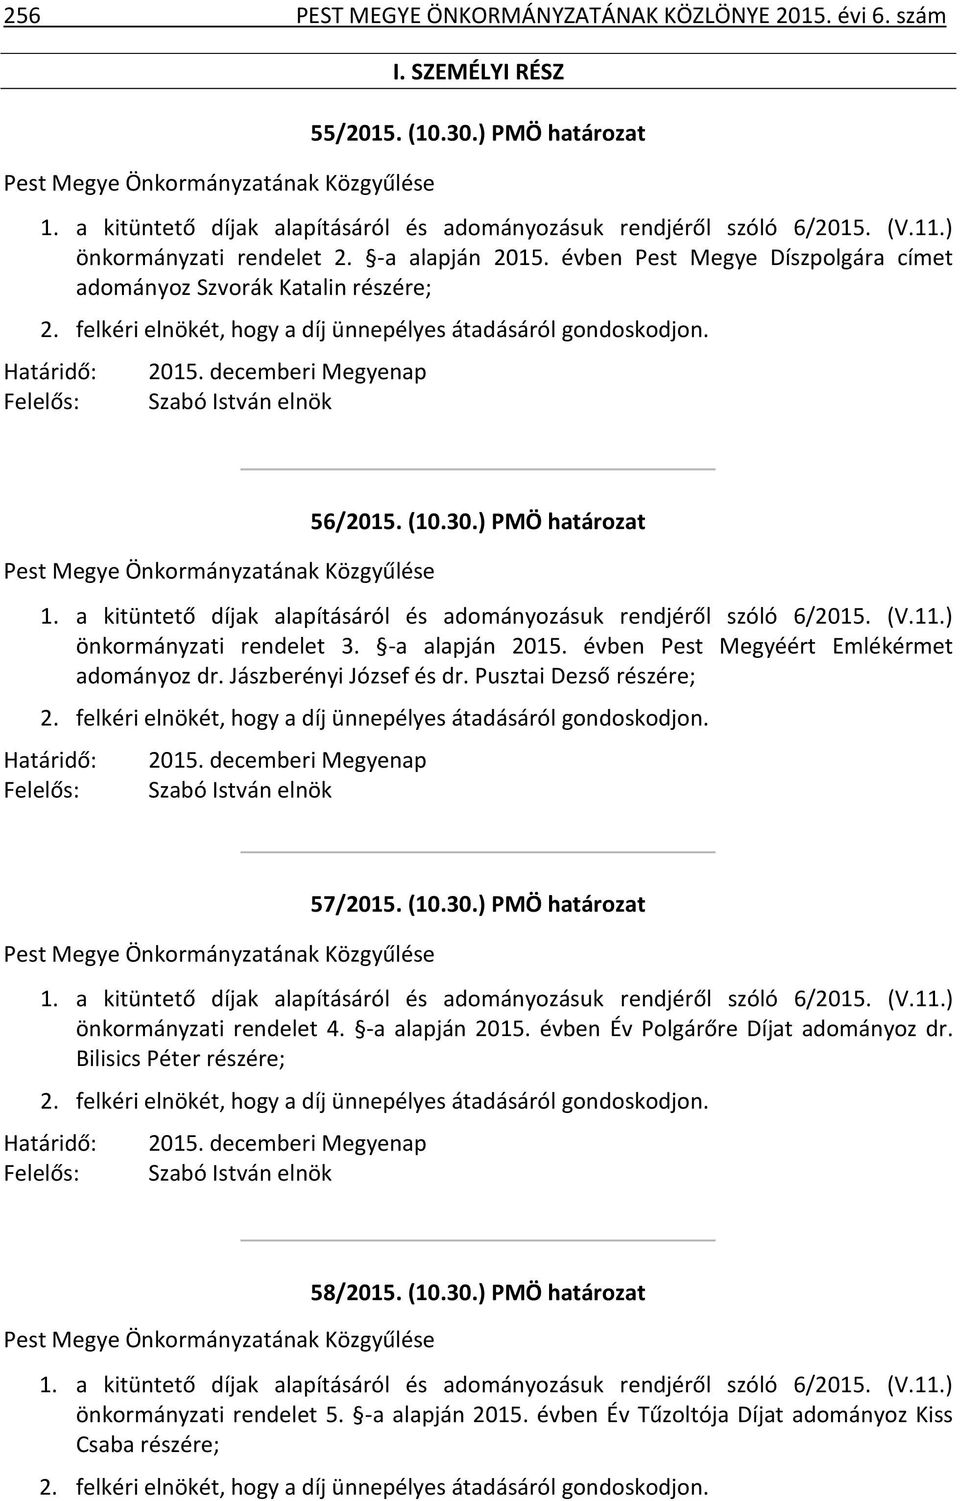 (10.30.) PMÖ határozat 1. a kitüntető díjak alapításáról és adományozásuk rendjéről szóló 6/2015. (V.11.) önkormányzati rendelet 3. -a alapján 2015. évben Pest Megyéért Emlékérmet adományoz dr.